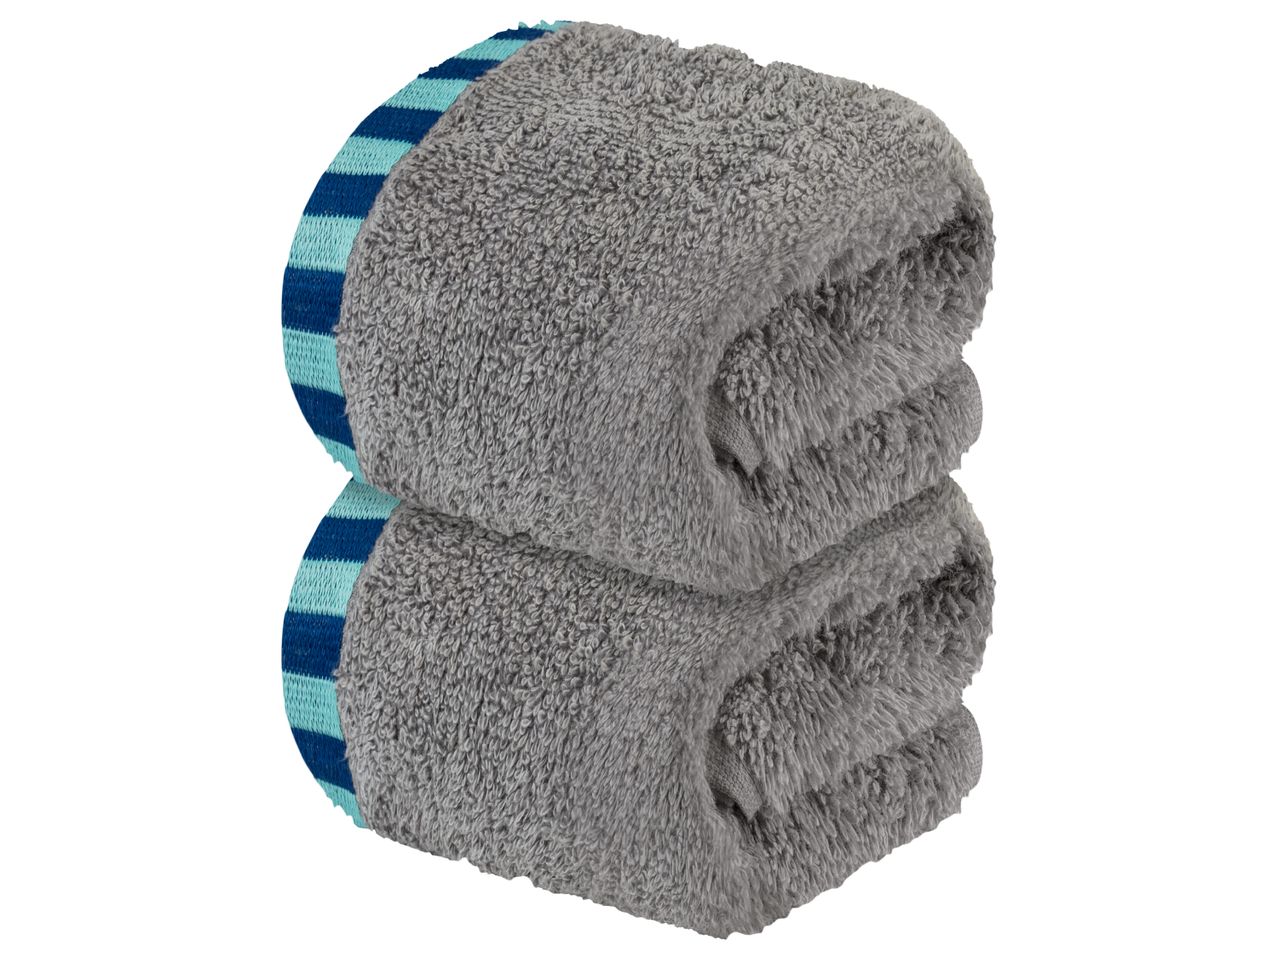 Asciugamano , prezzo 2.49 EUR 
Asciugamano 30x50 cm, 2 pezzi 
- Puro cotone
- 450 ...